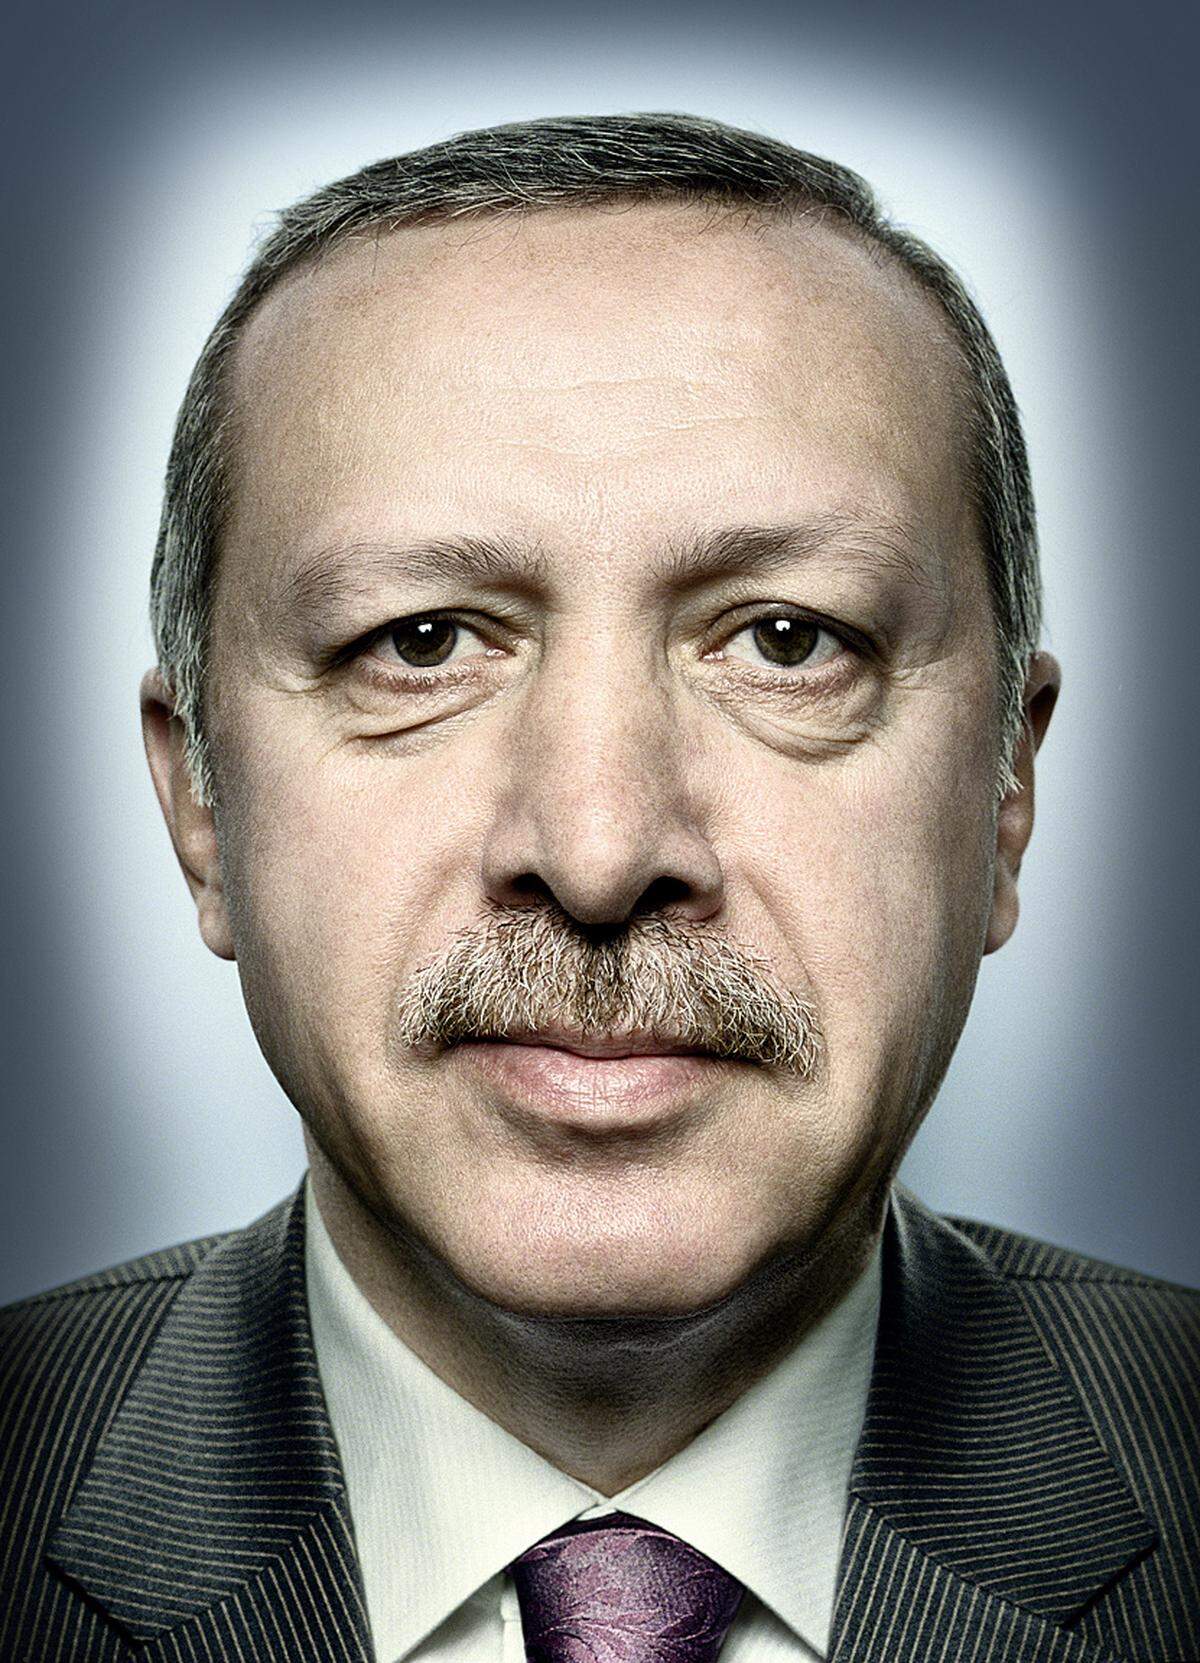 Recep Tayyip Erdoğan Premierminister der Türkei, im Amt seit März 2003. (c) Platon